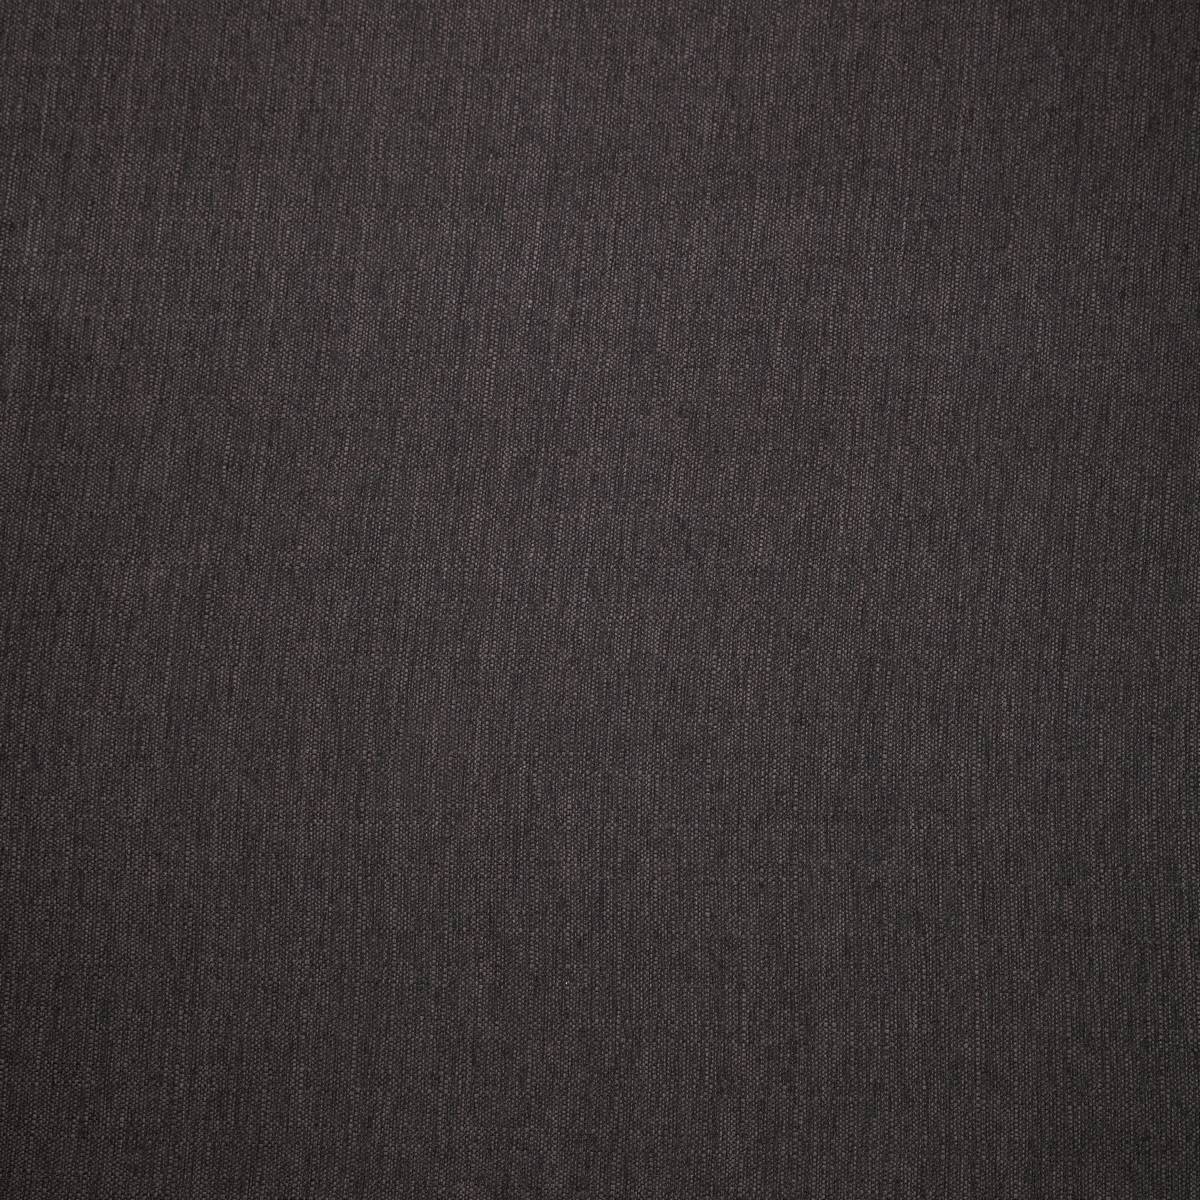 Shetland Charcoal Fabric by iLiv